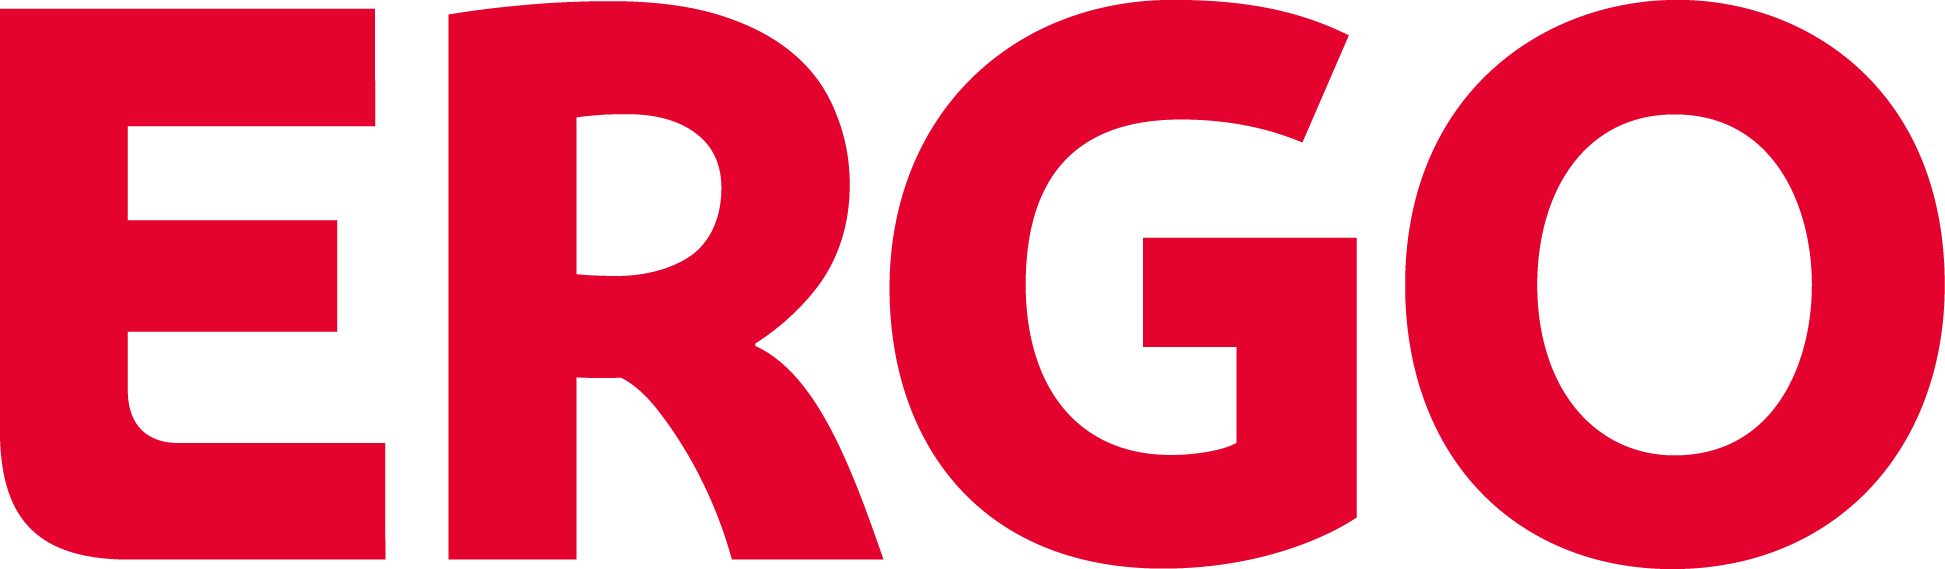 Ergo Logo png